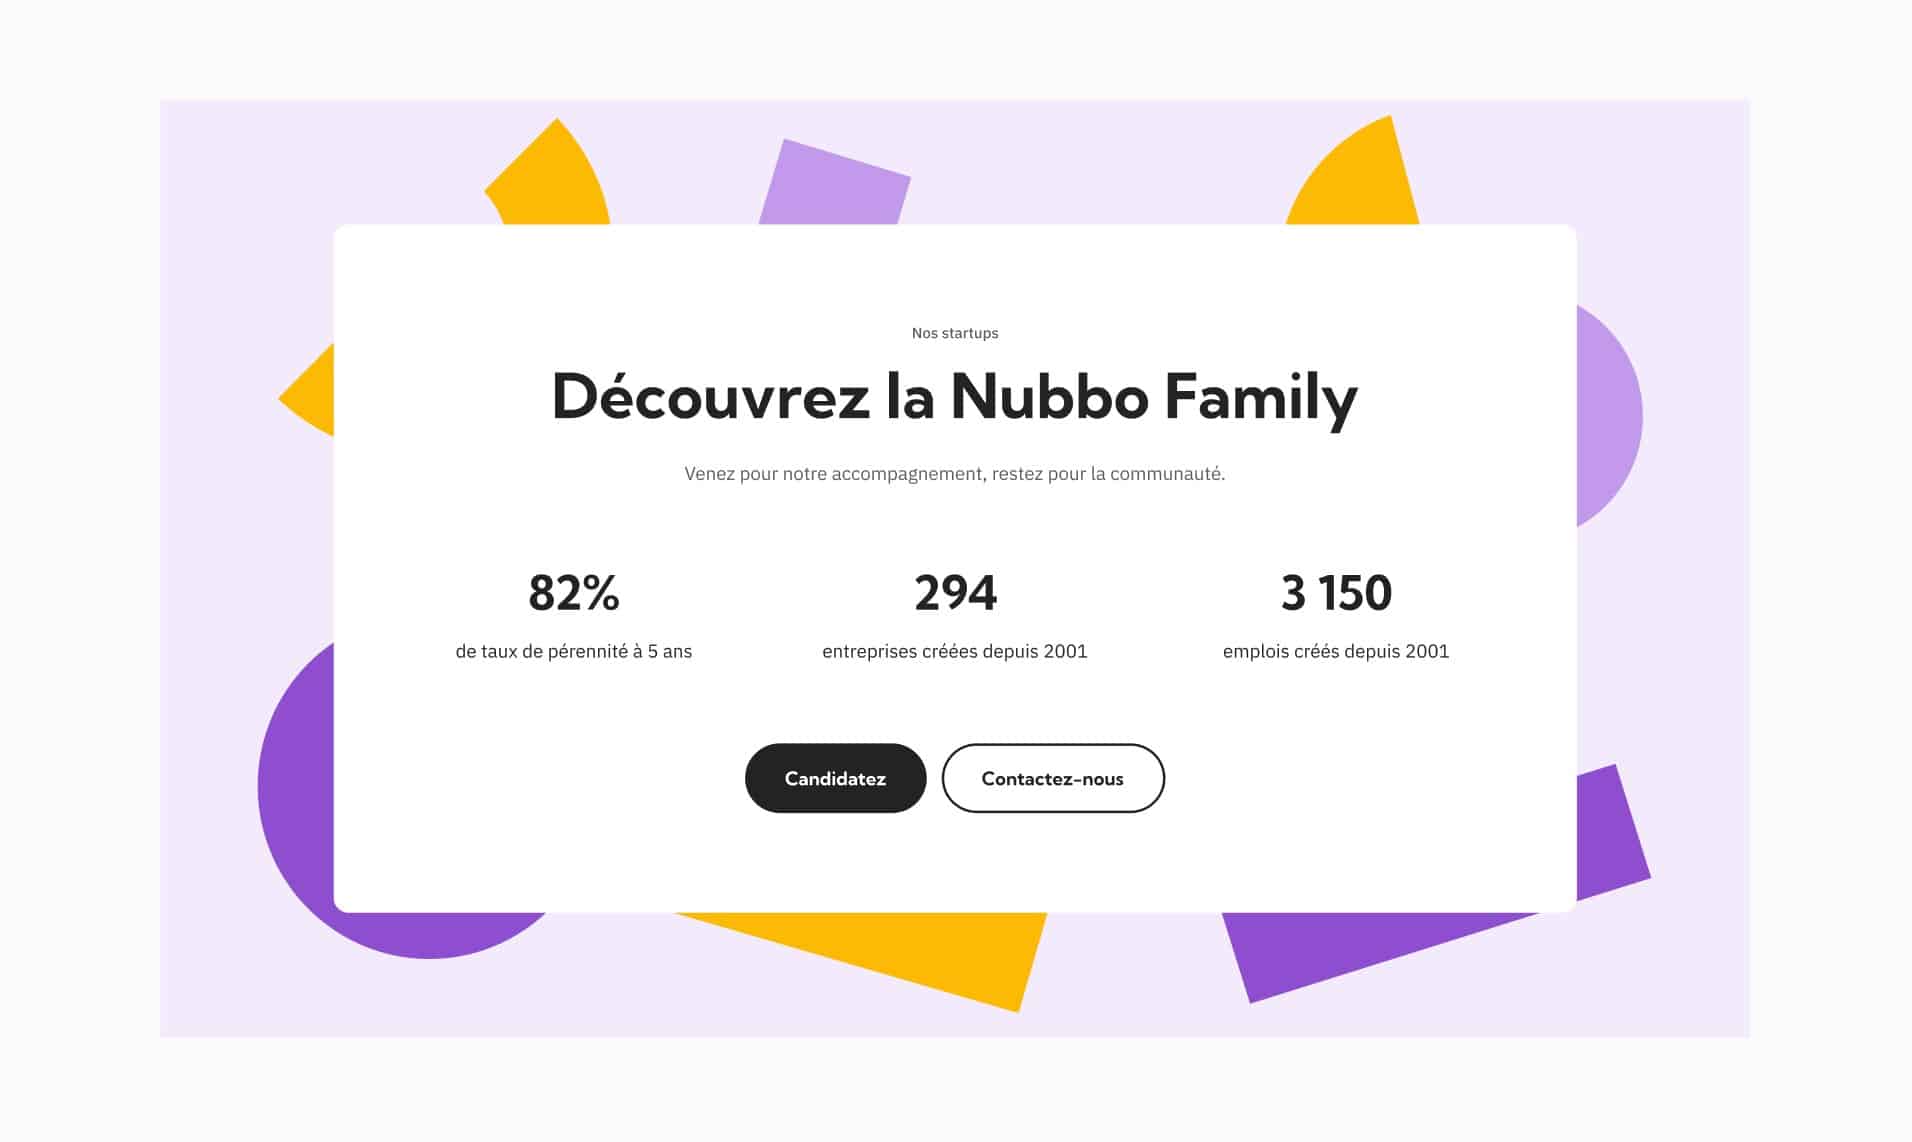 Section à propos de la Nubbo Family